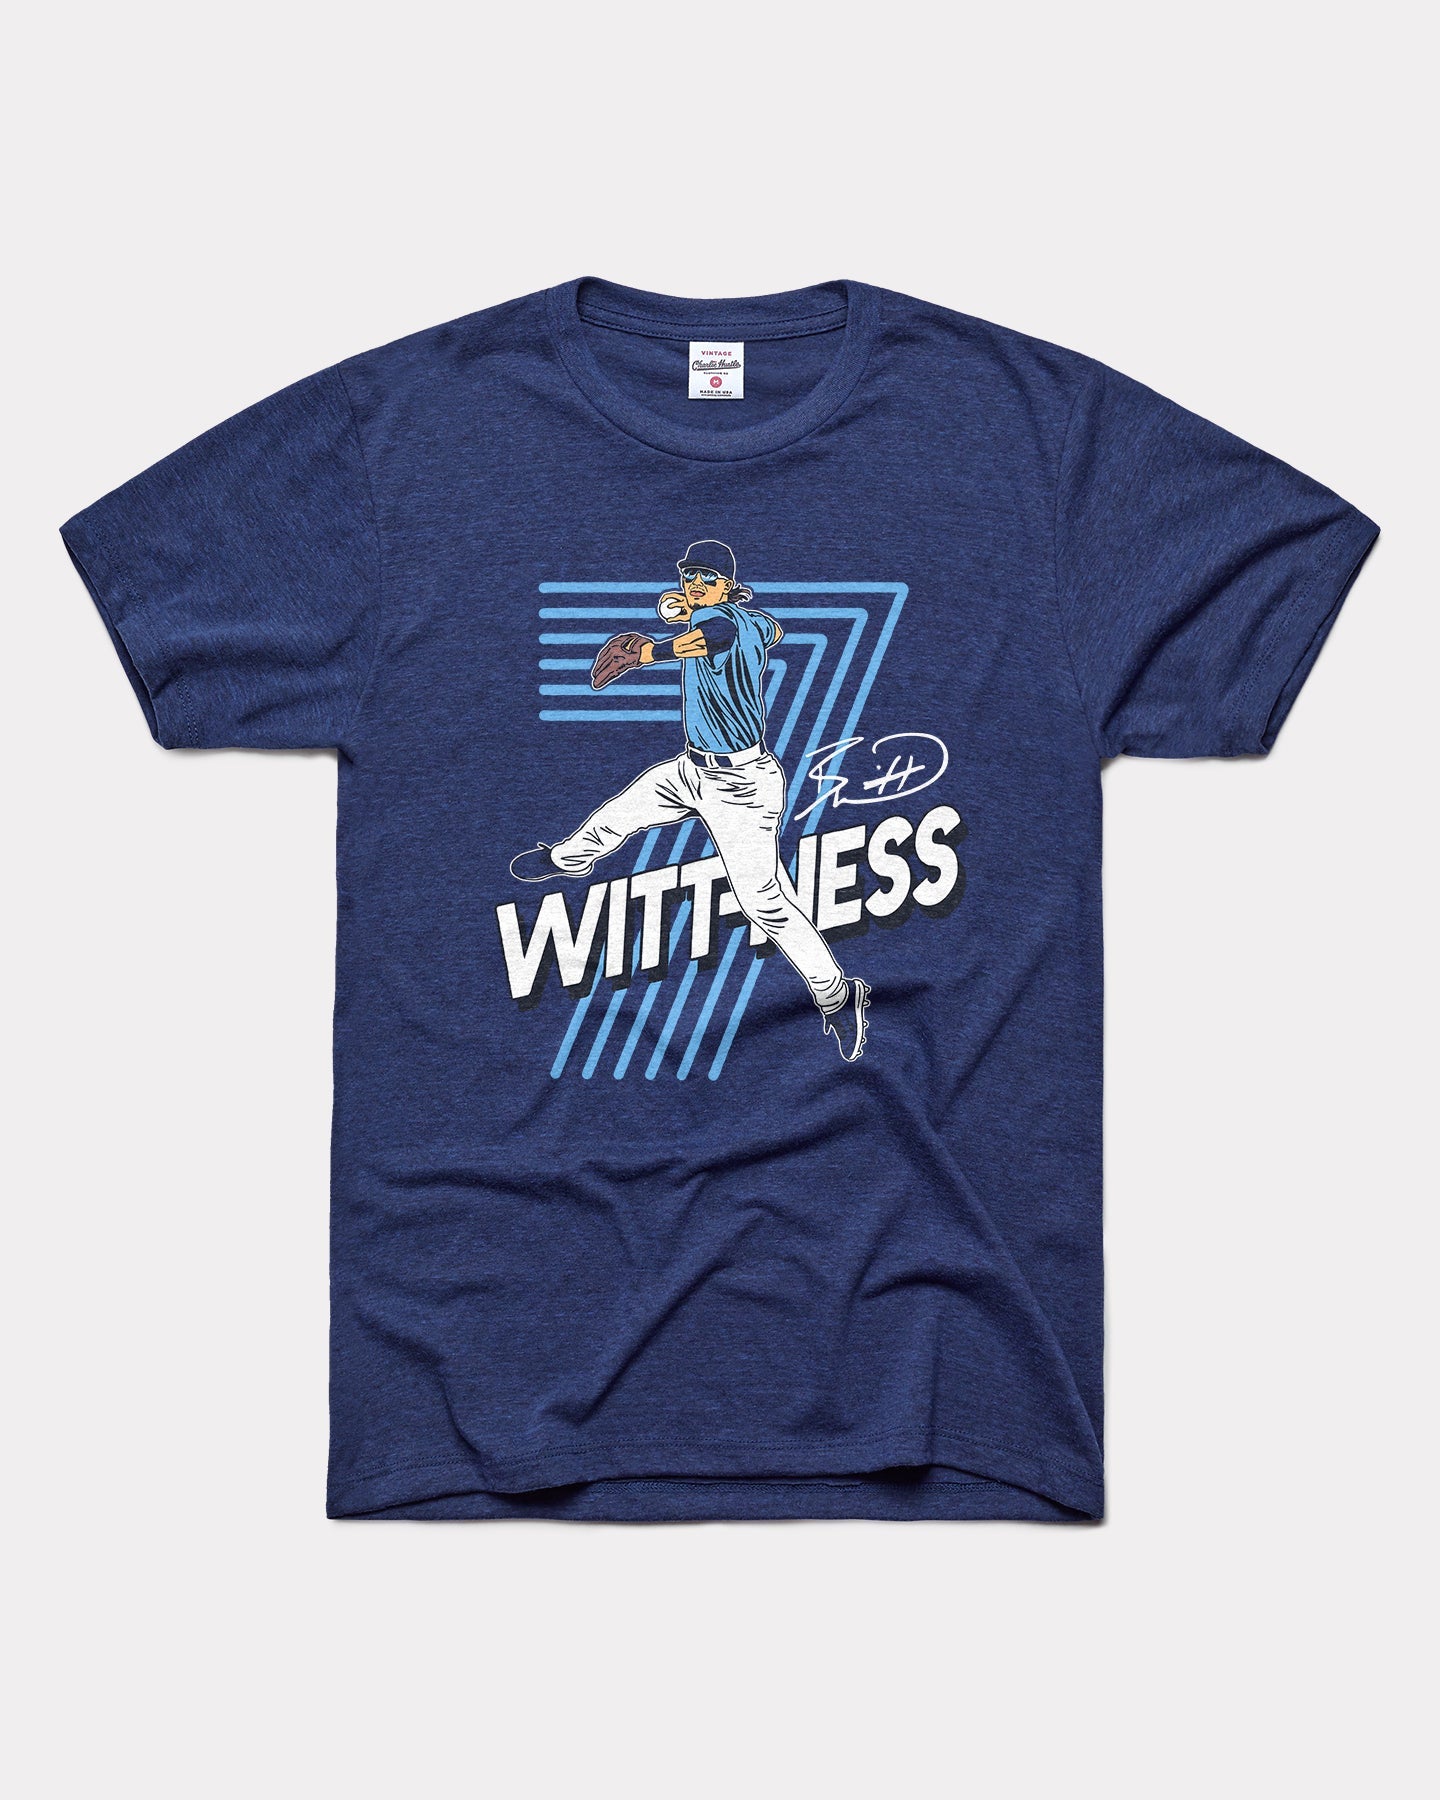 Bobby Witt Junior Wittness Navy T-Shirt | Charlie Hustle 04 / XXL